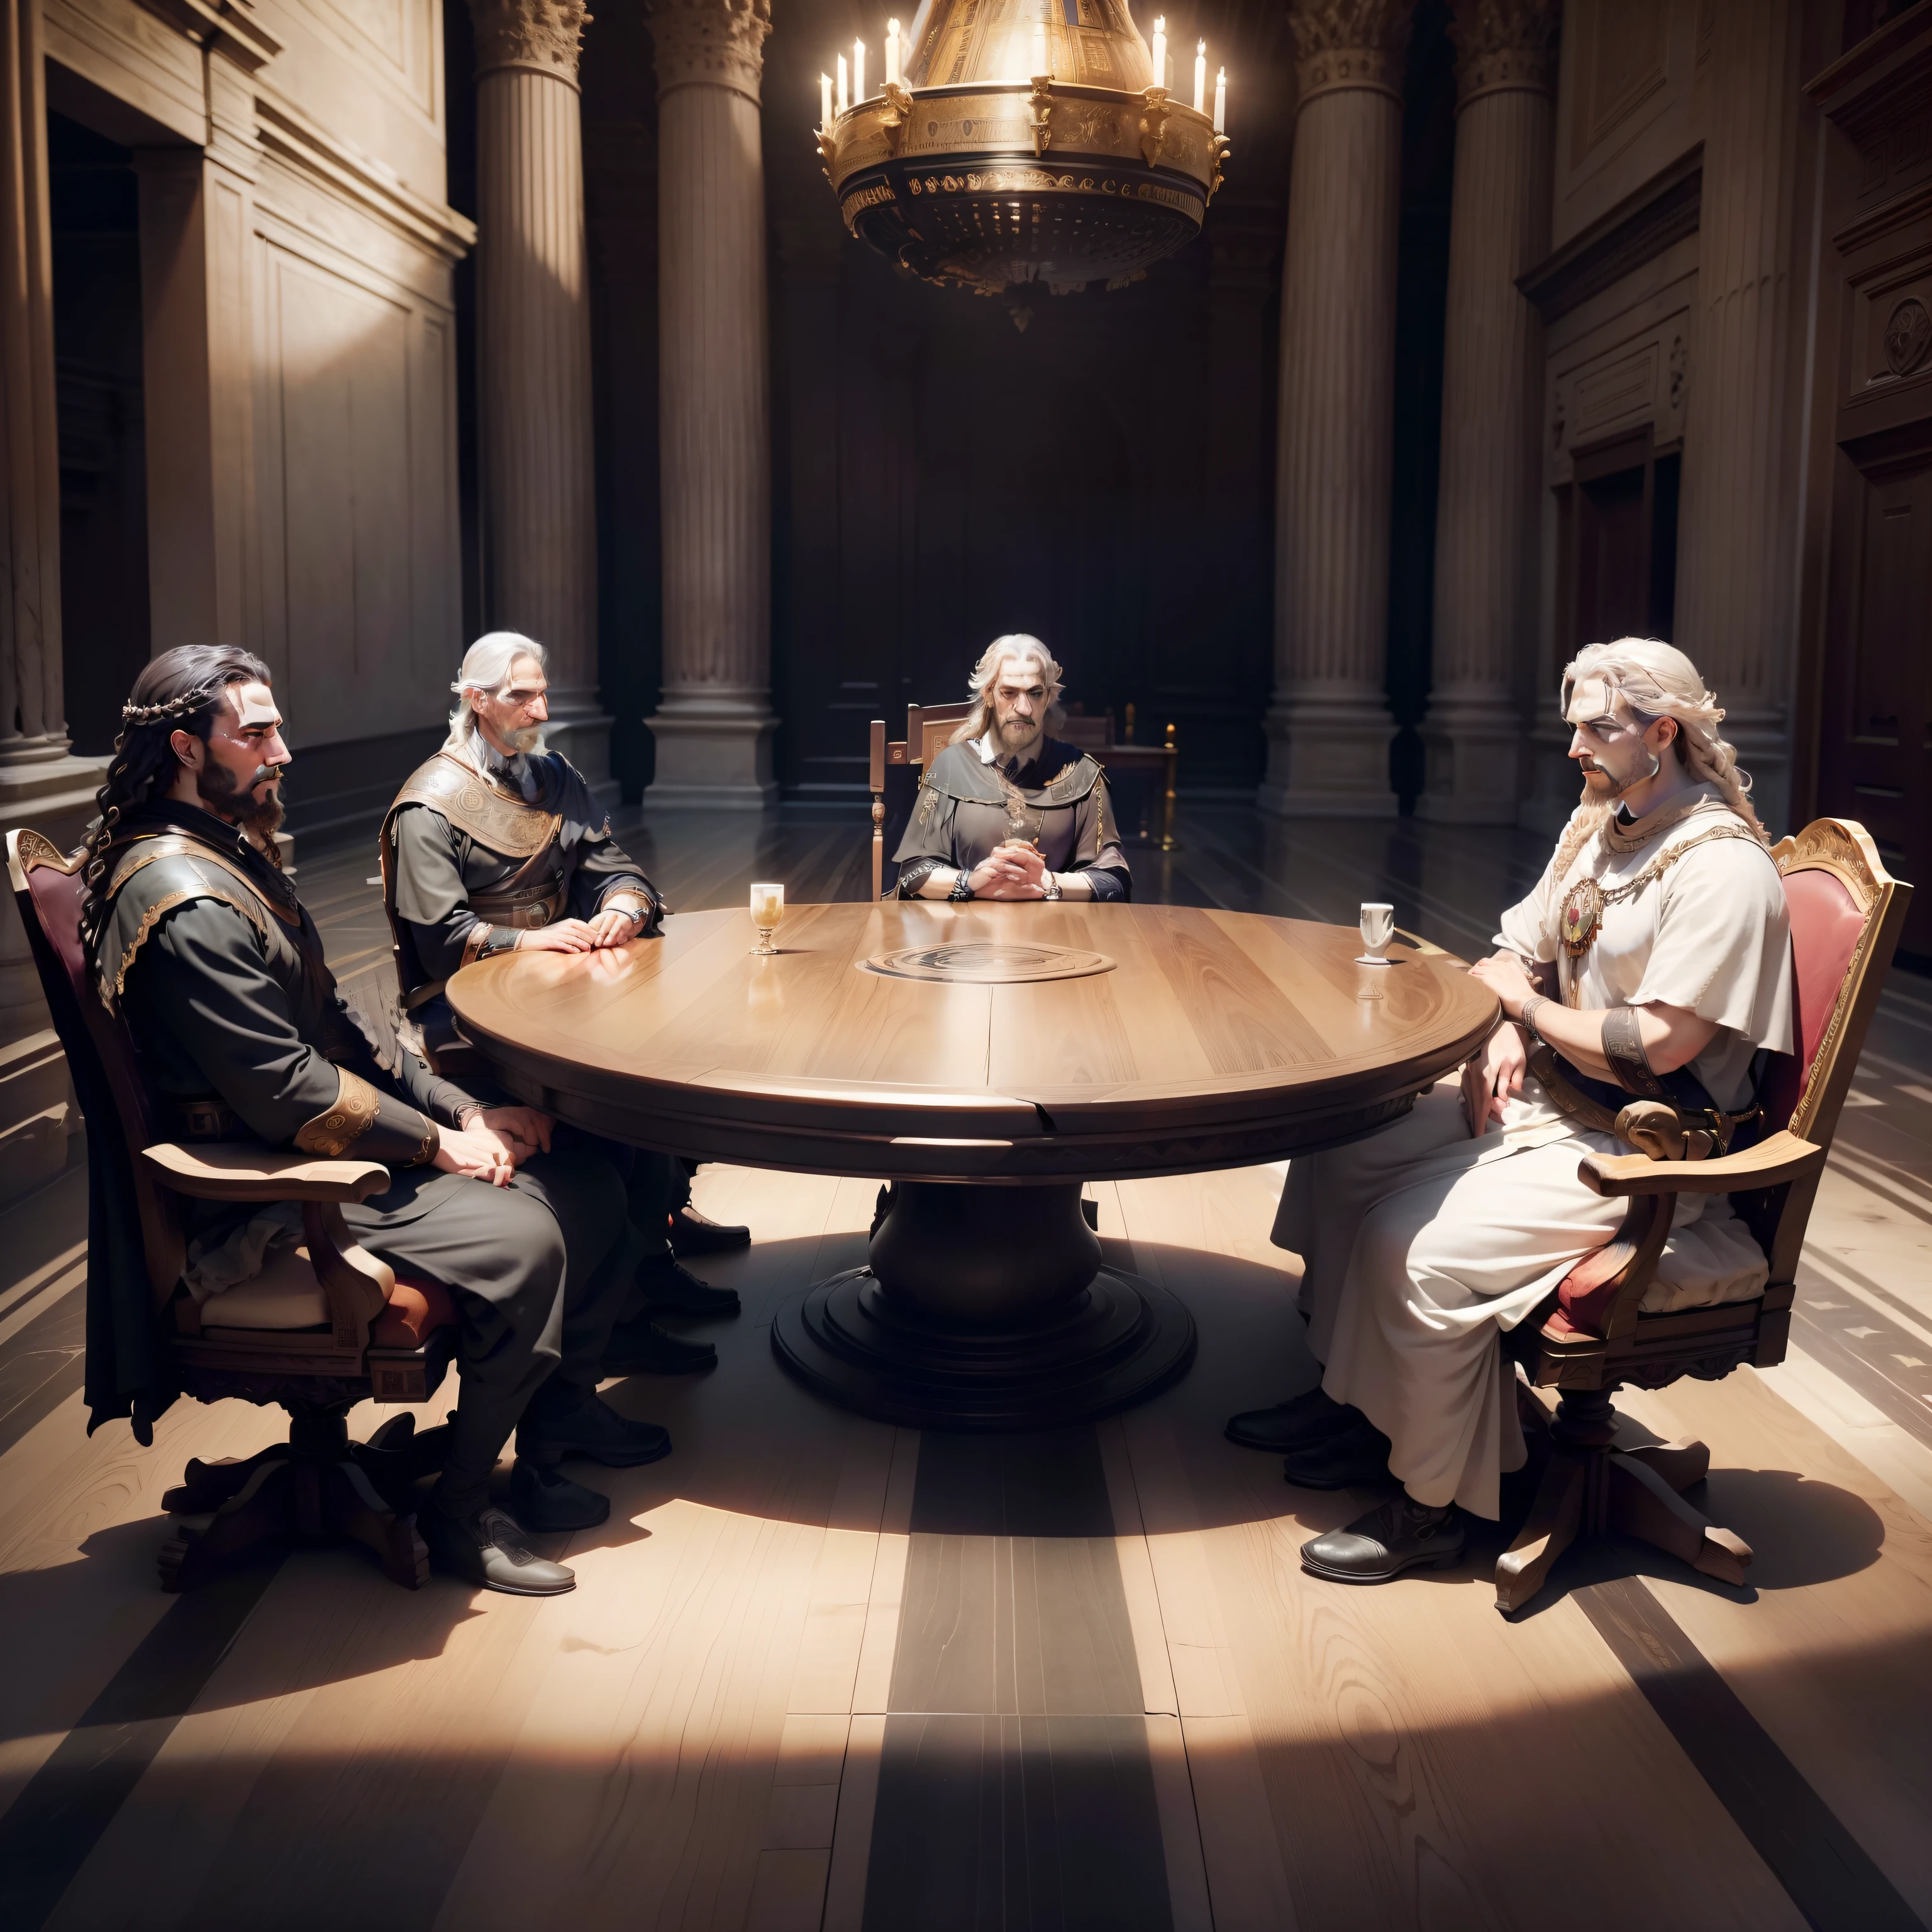 ((Majestätisch und bedrohlich) Fünf hochrangige römische Senatoren sitzen dramatisch um einen massiven antiken Tisch in der großen Halle des römischen Senatsgebäudes. Lebensechte Ausdrücke und intensive Blicke, während sie ihre ausgeklügelte Handlung enthüllen). Unglaublich komplizierte Gesichtsdetails. Historisch.